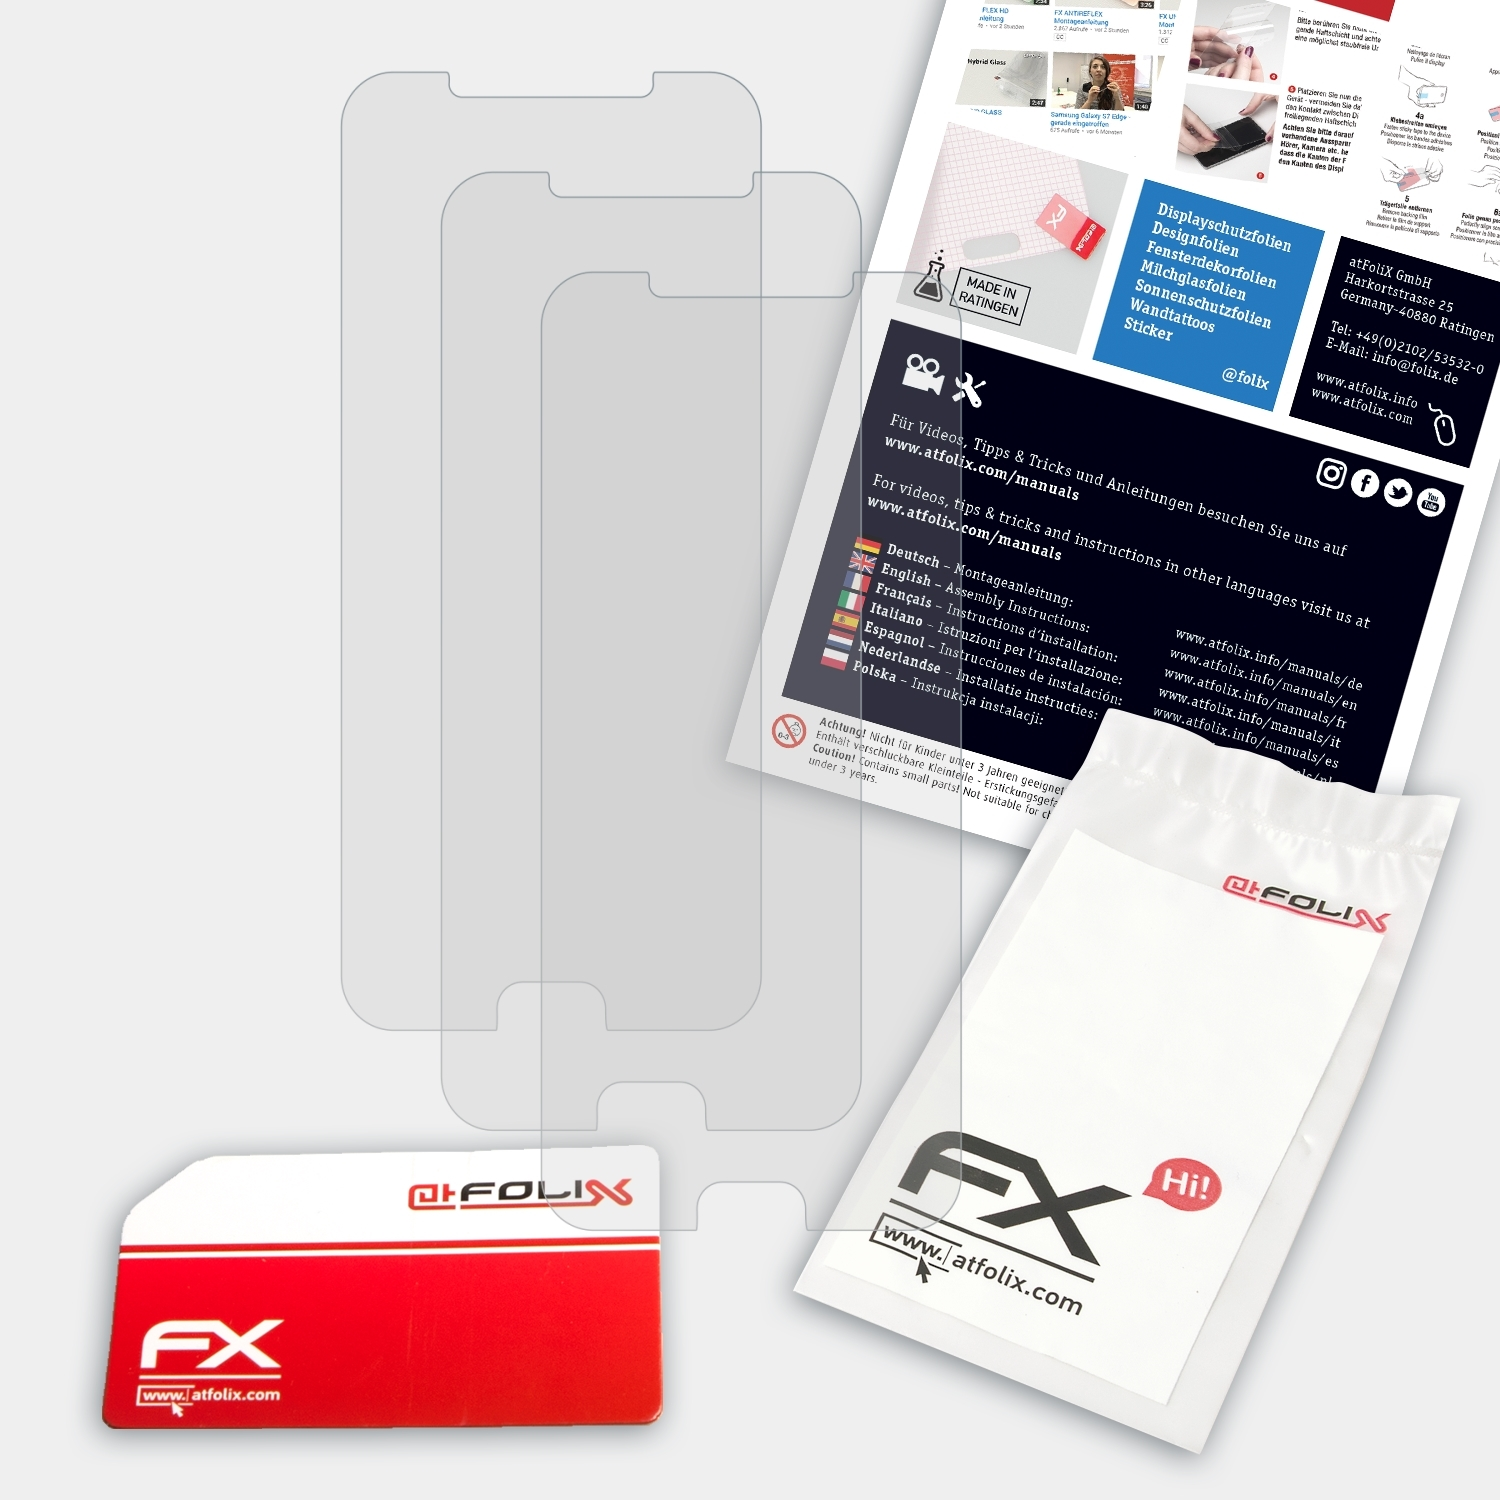 ATFOLIX 3x Y7 Plus) Doogee Displayschutz(für FX-Antireflex